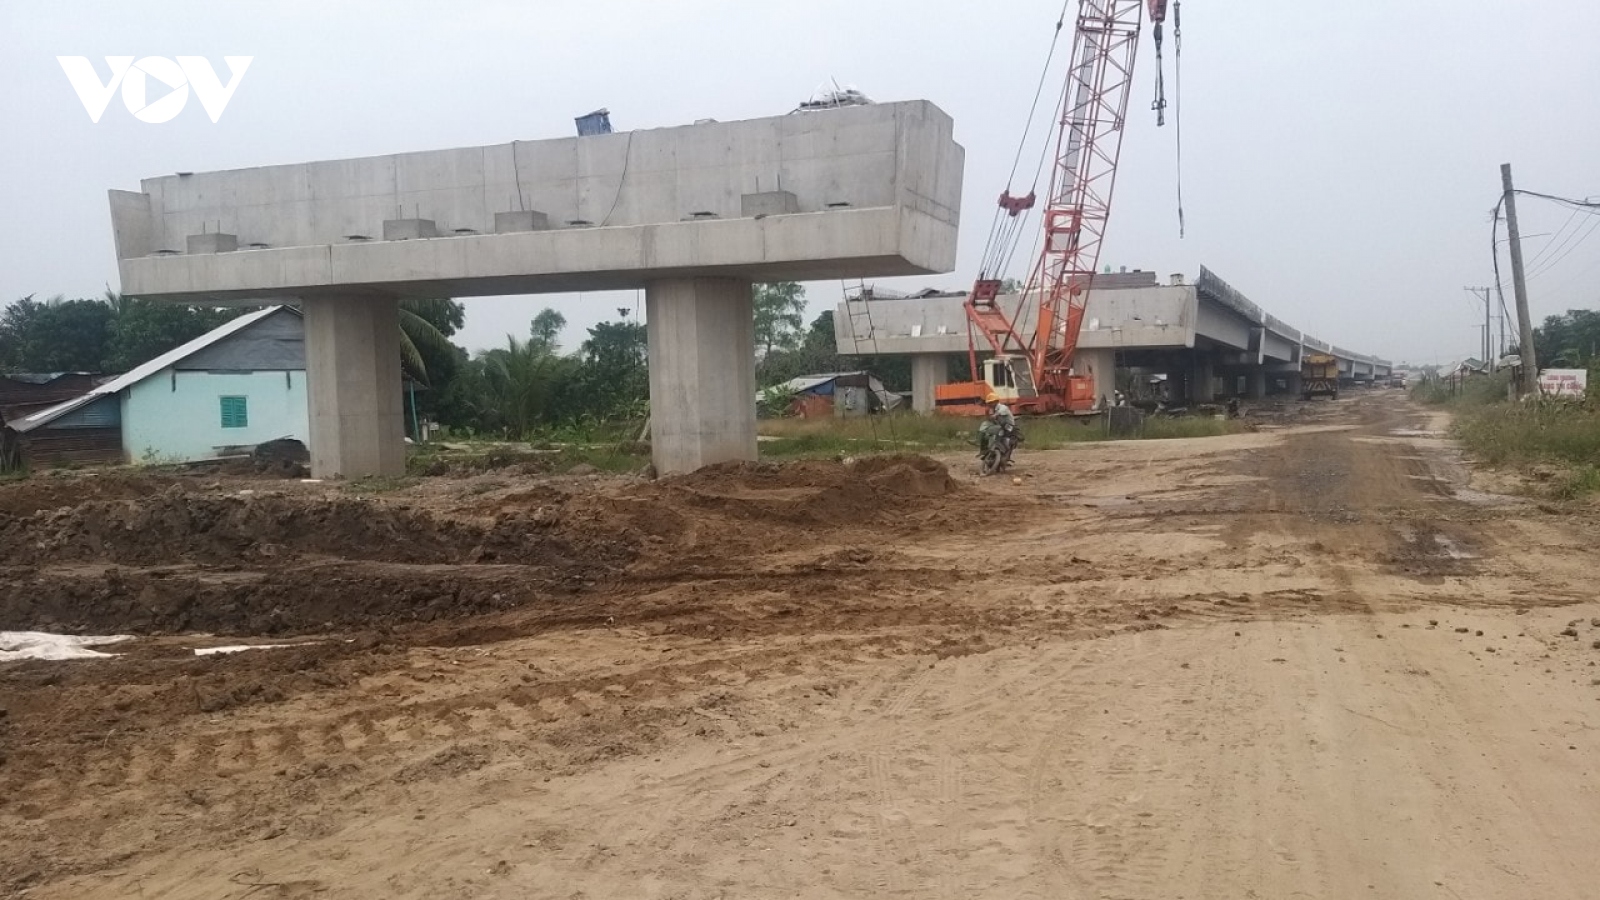 Tiền Giang, Vĩnh Long gấp rút giải phóng mặt bằng để phục vụ dự án xây cầu Mỹ Thuận 2